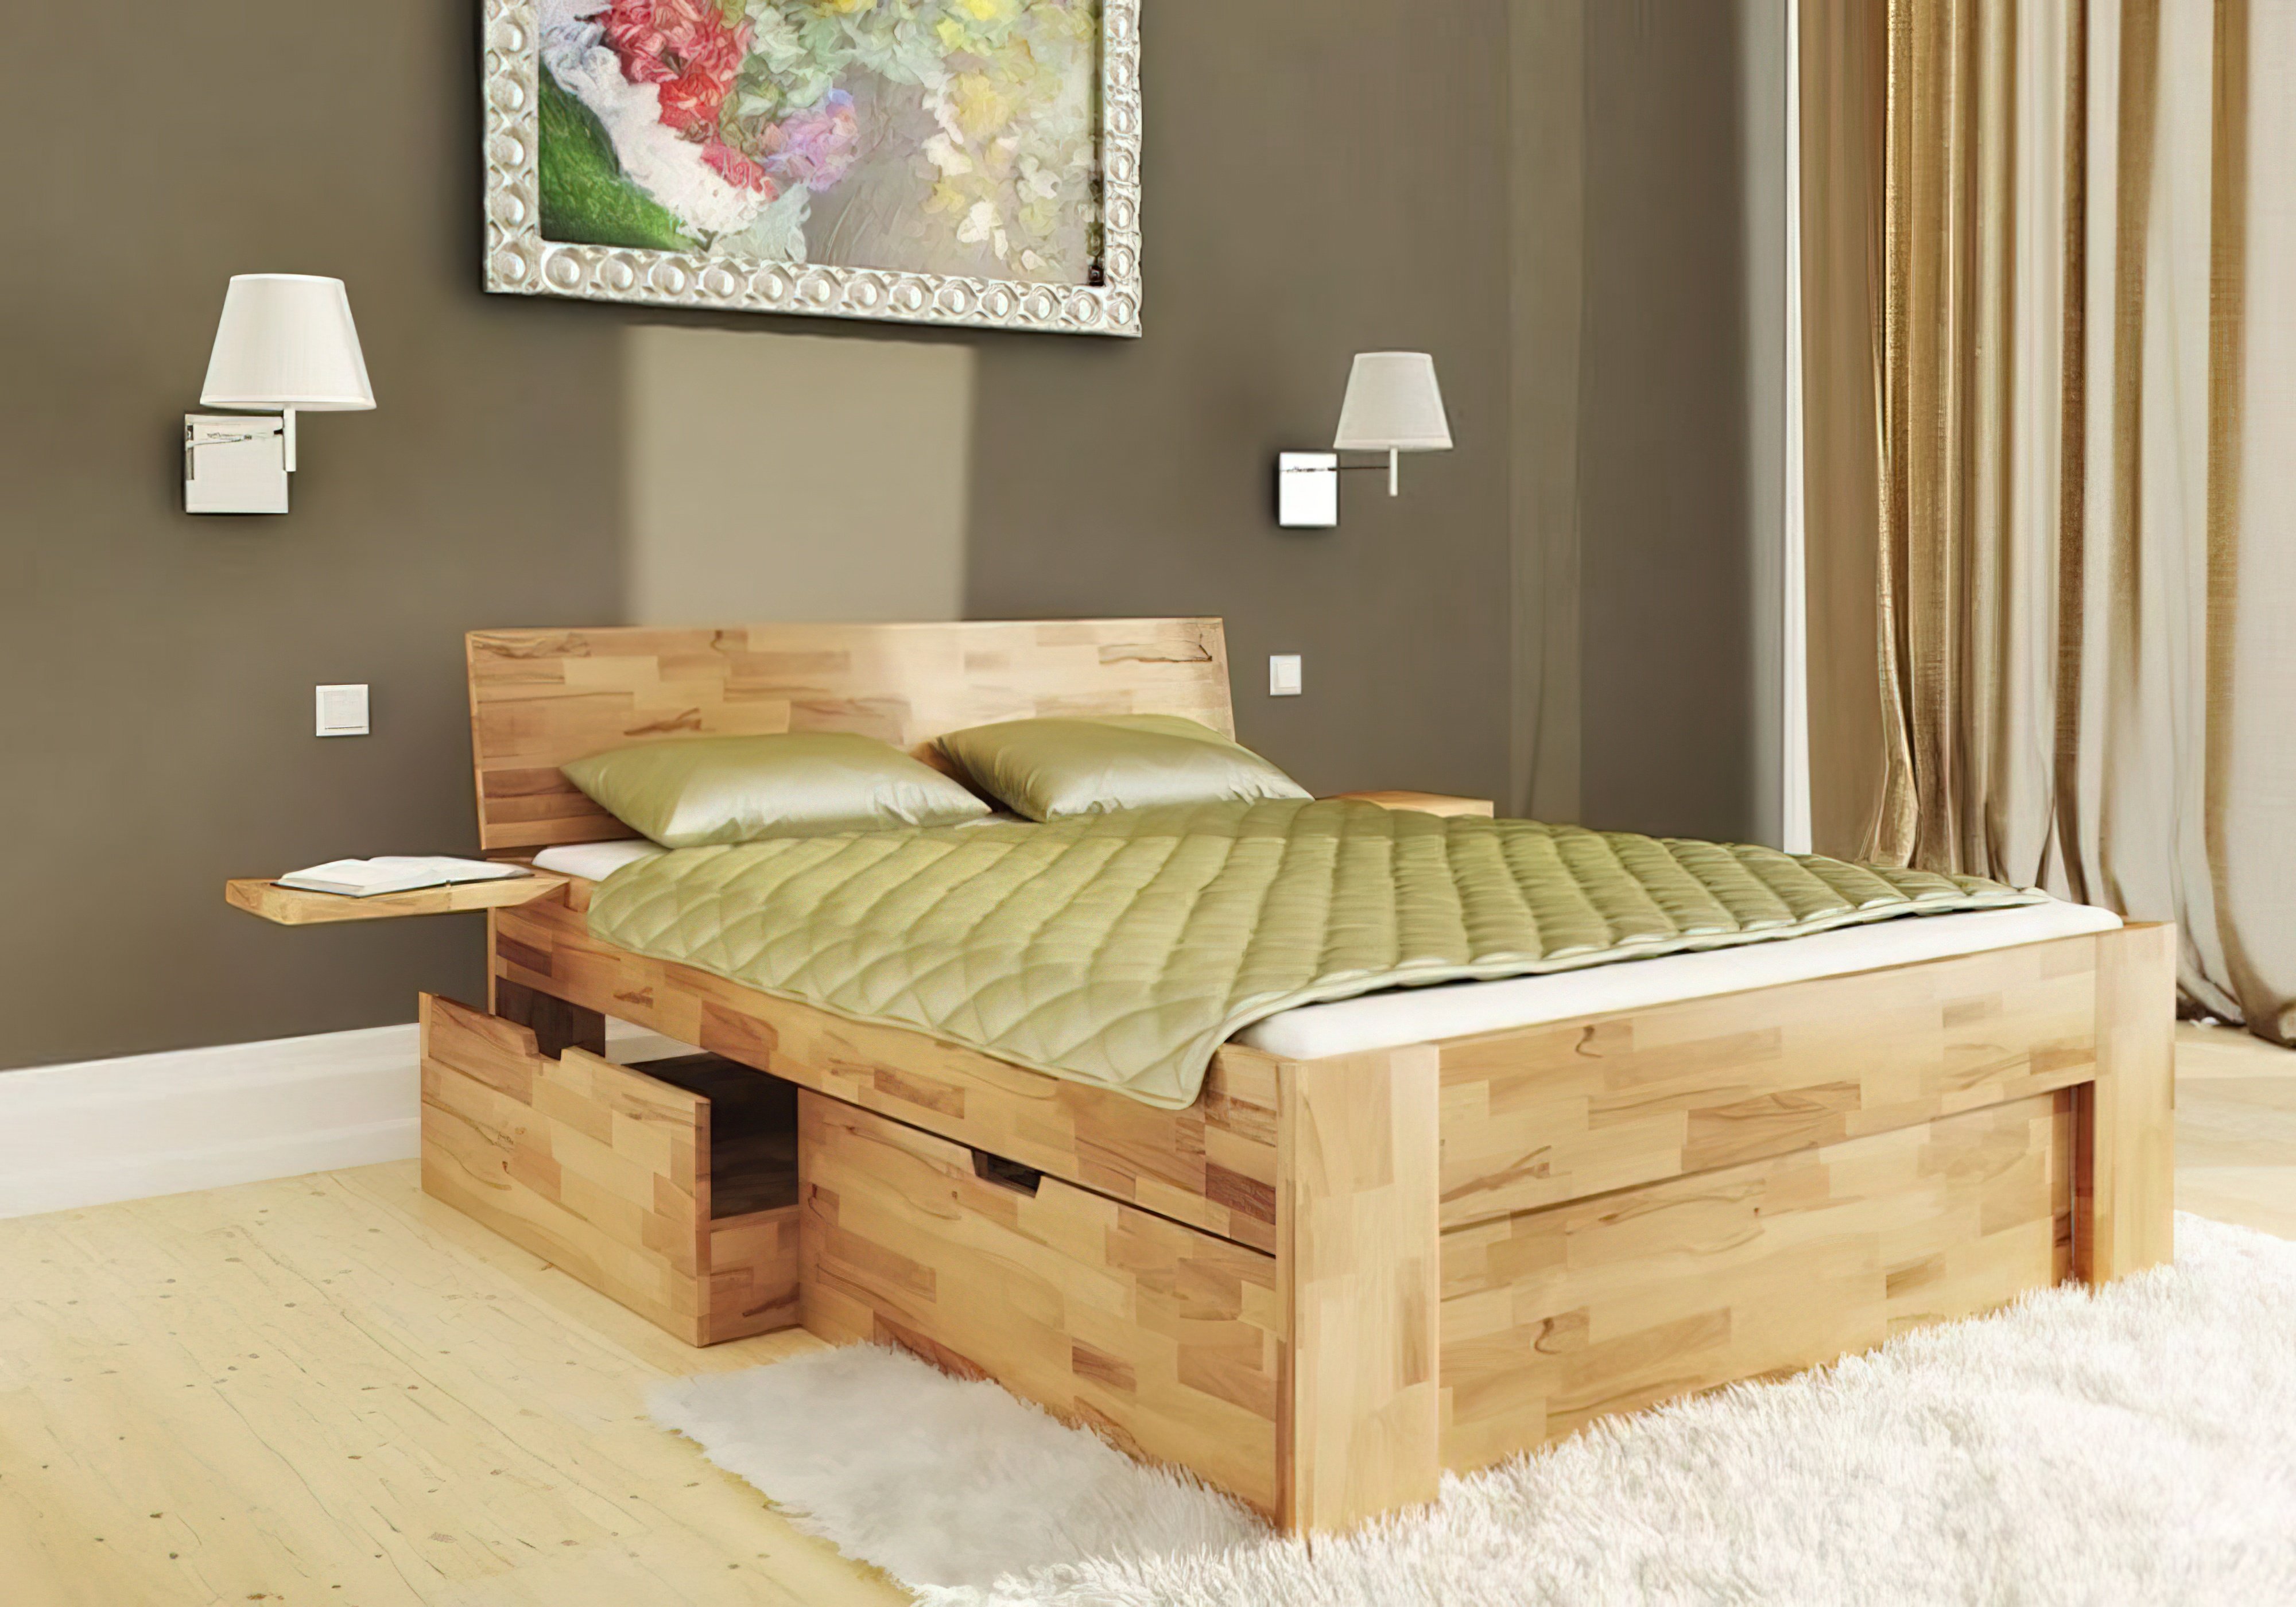  Купить Деревянные кровати Кровать "b111" Mobler